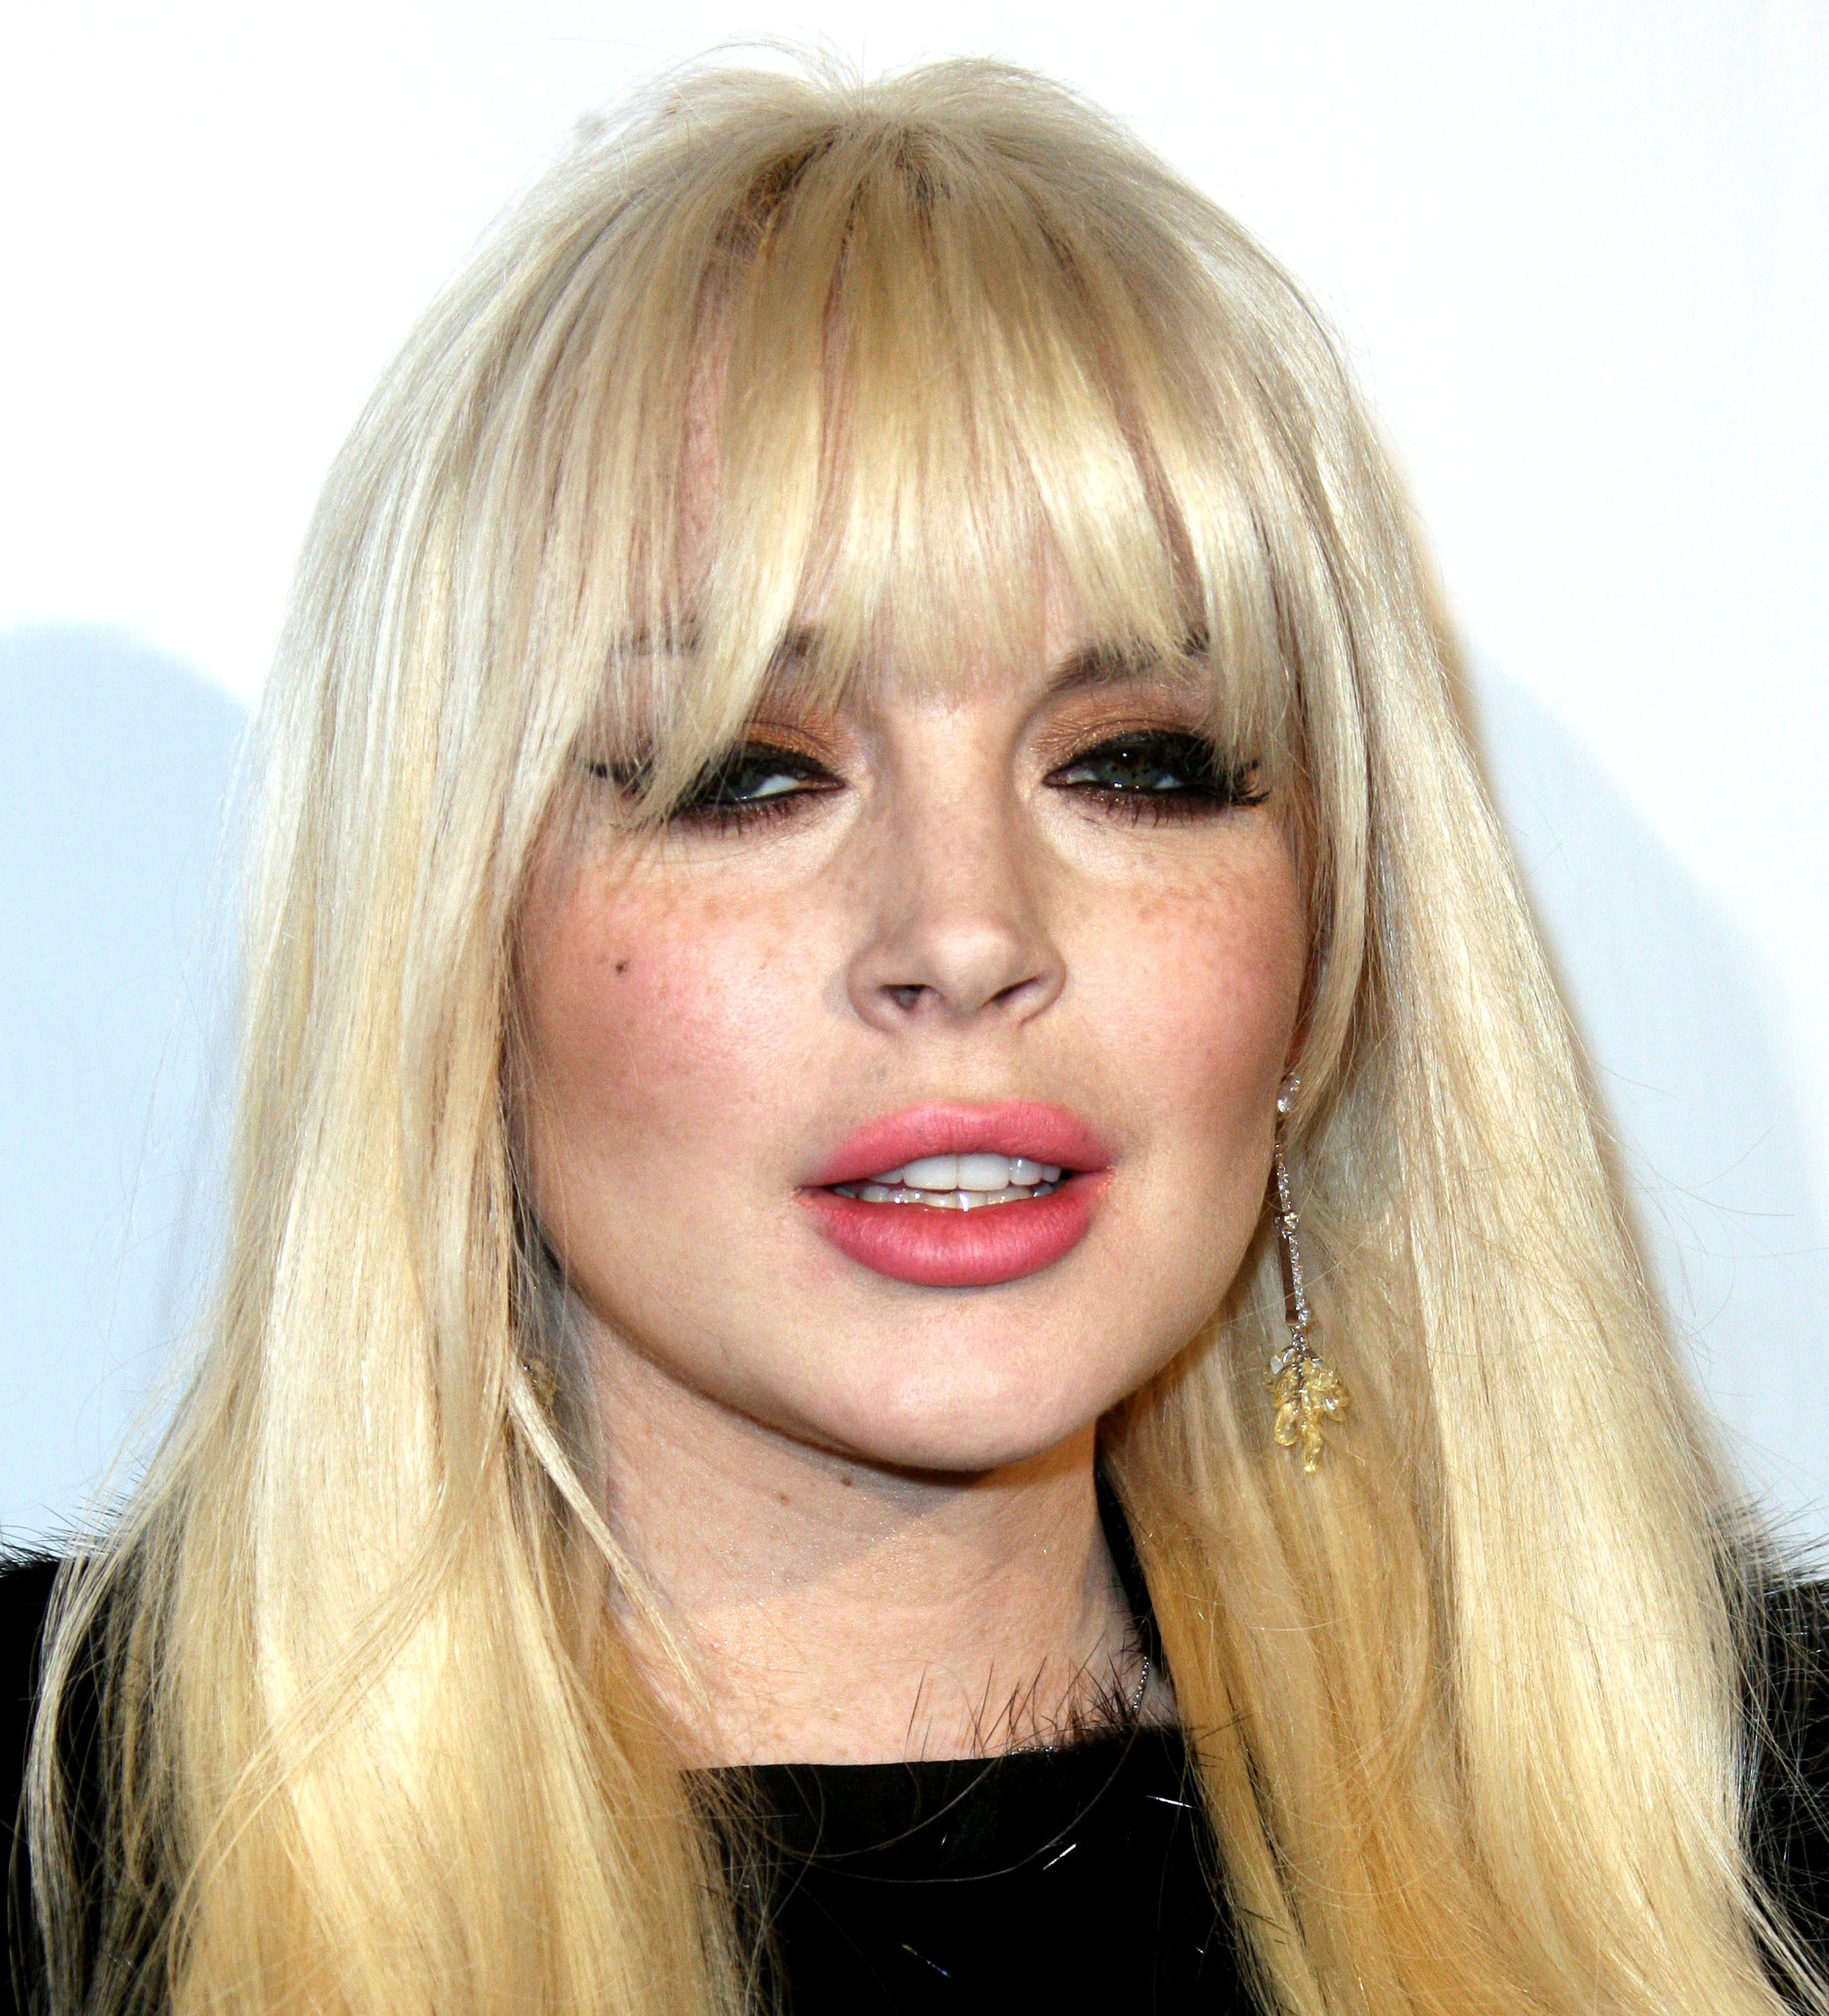 Actress Lindsay Lohan at LAX Airport,CA USA Editorial Photo - Image of  california, hair: 20682991